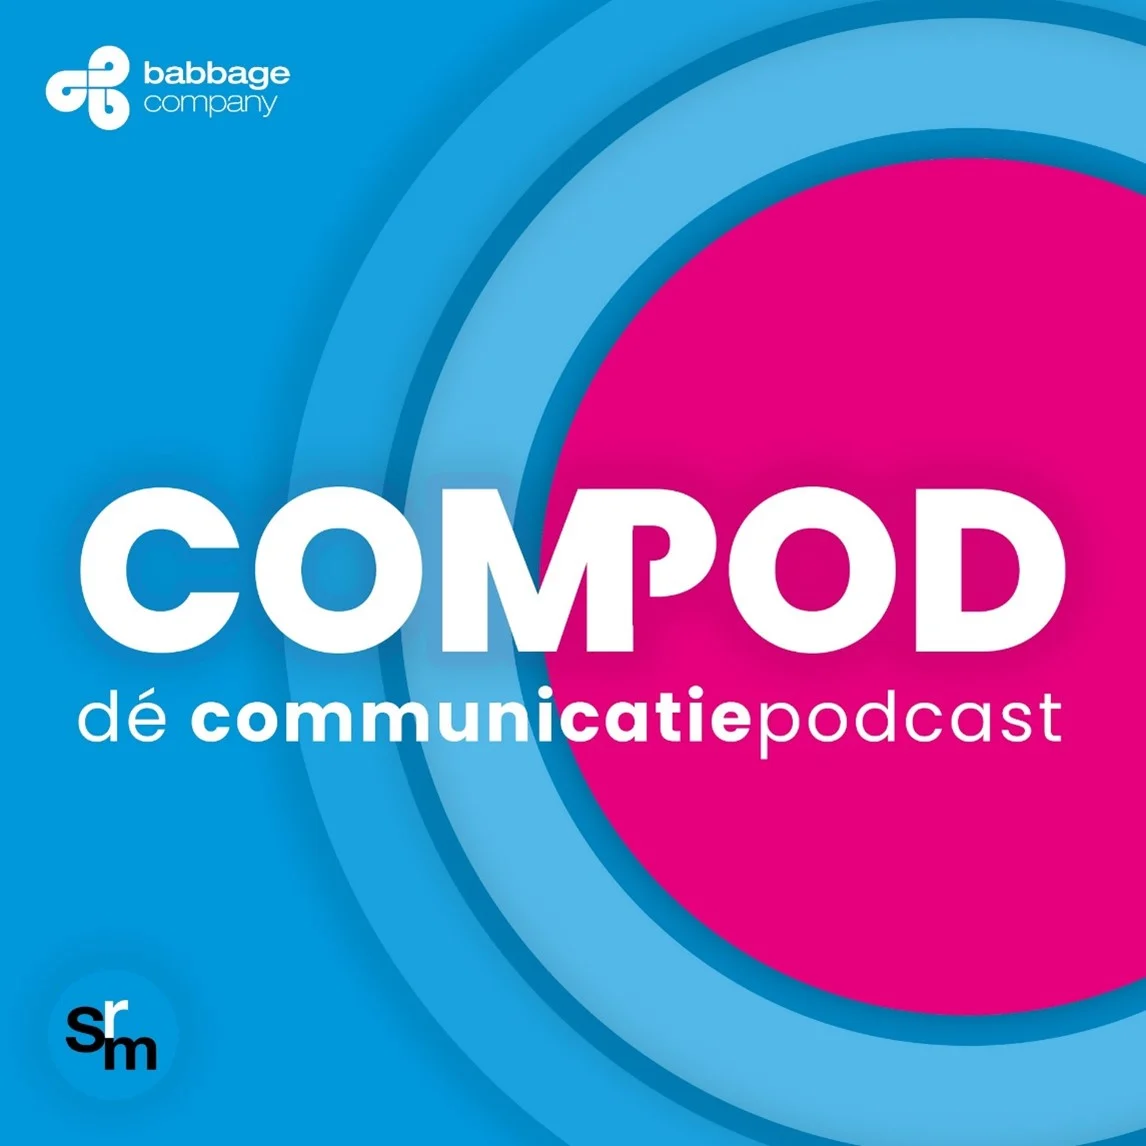 SRM Opleidingen en Babbage Company hebben de podcast COMPOD opgezet, de communicatiepodcast.